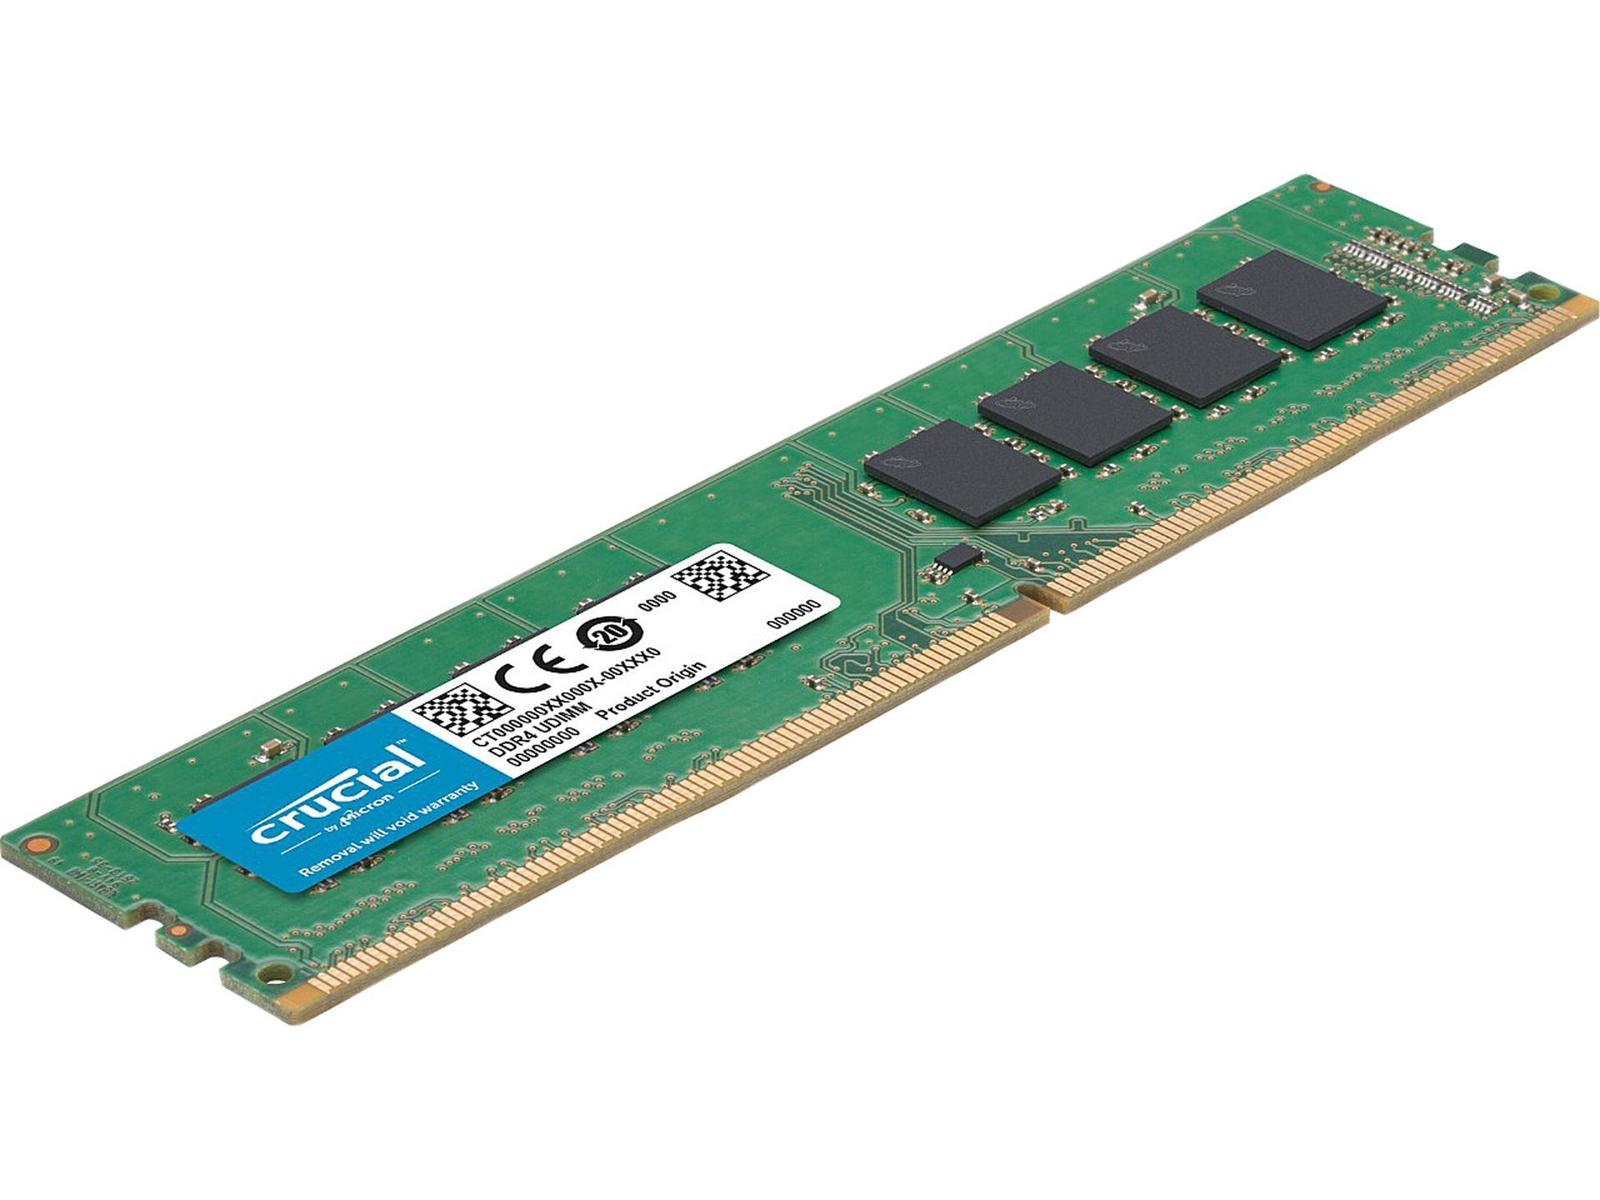 Crucial CT16G4DFD824A 16 GB (1x16 GB) DDR4-2400